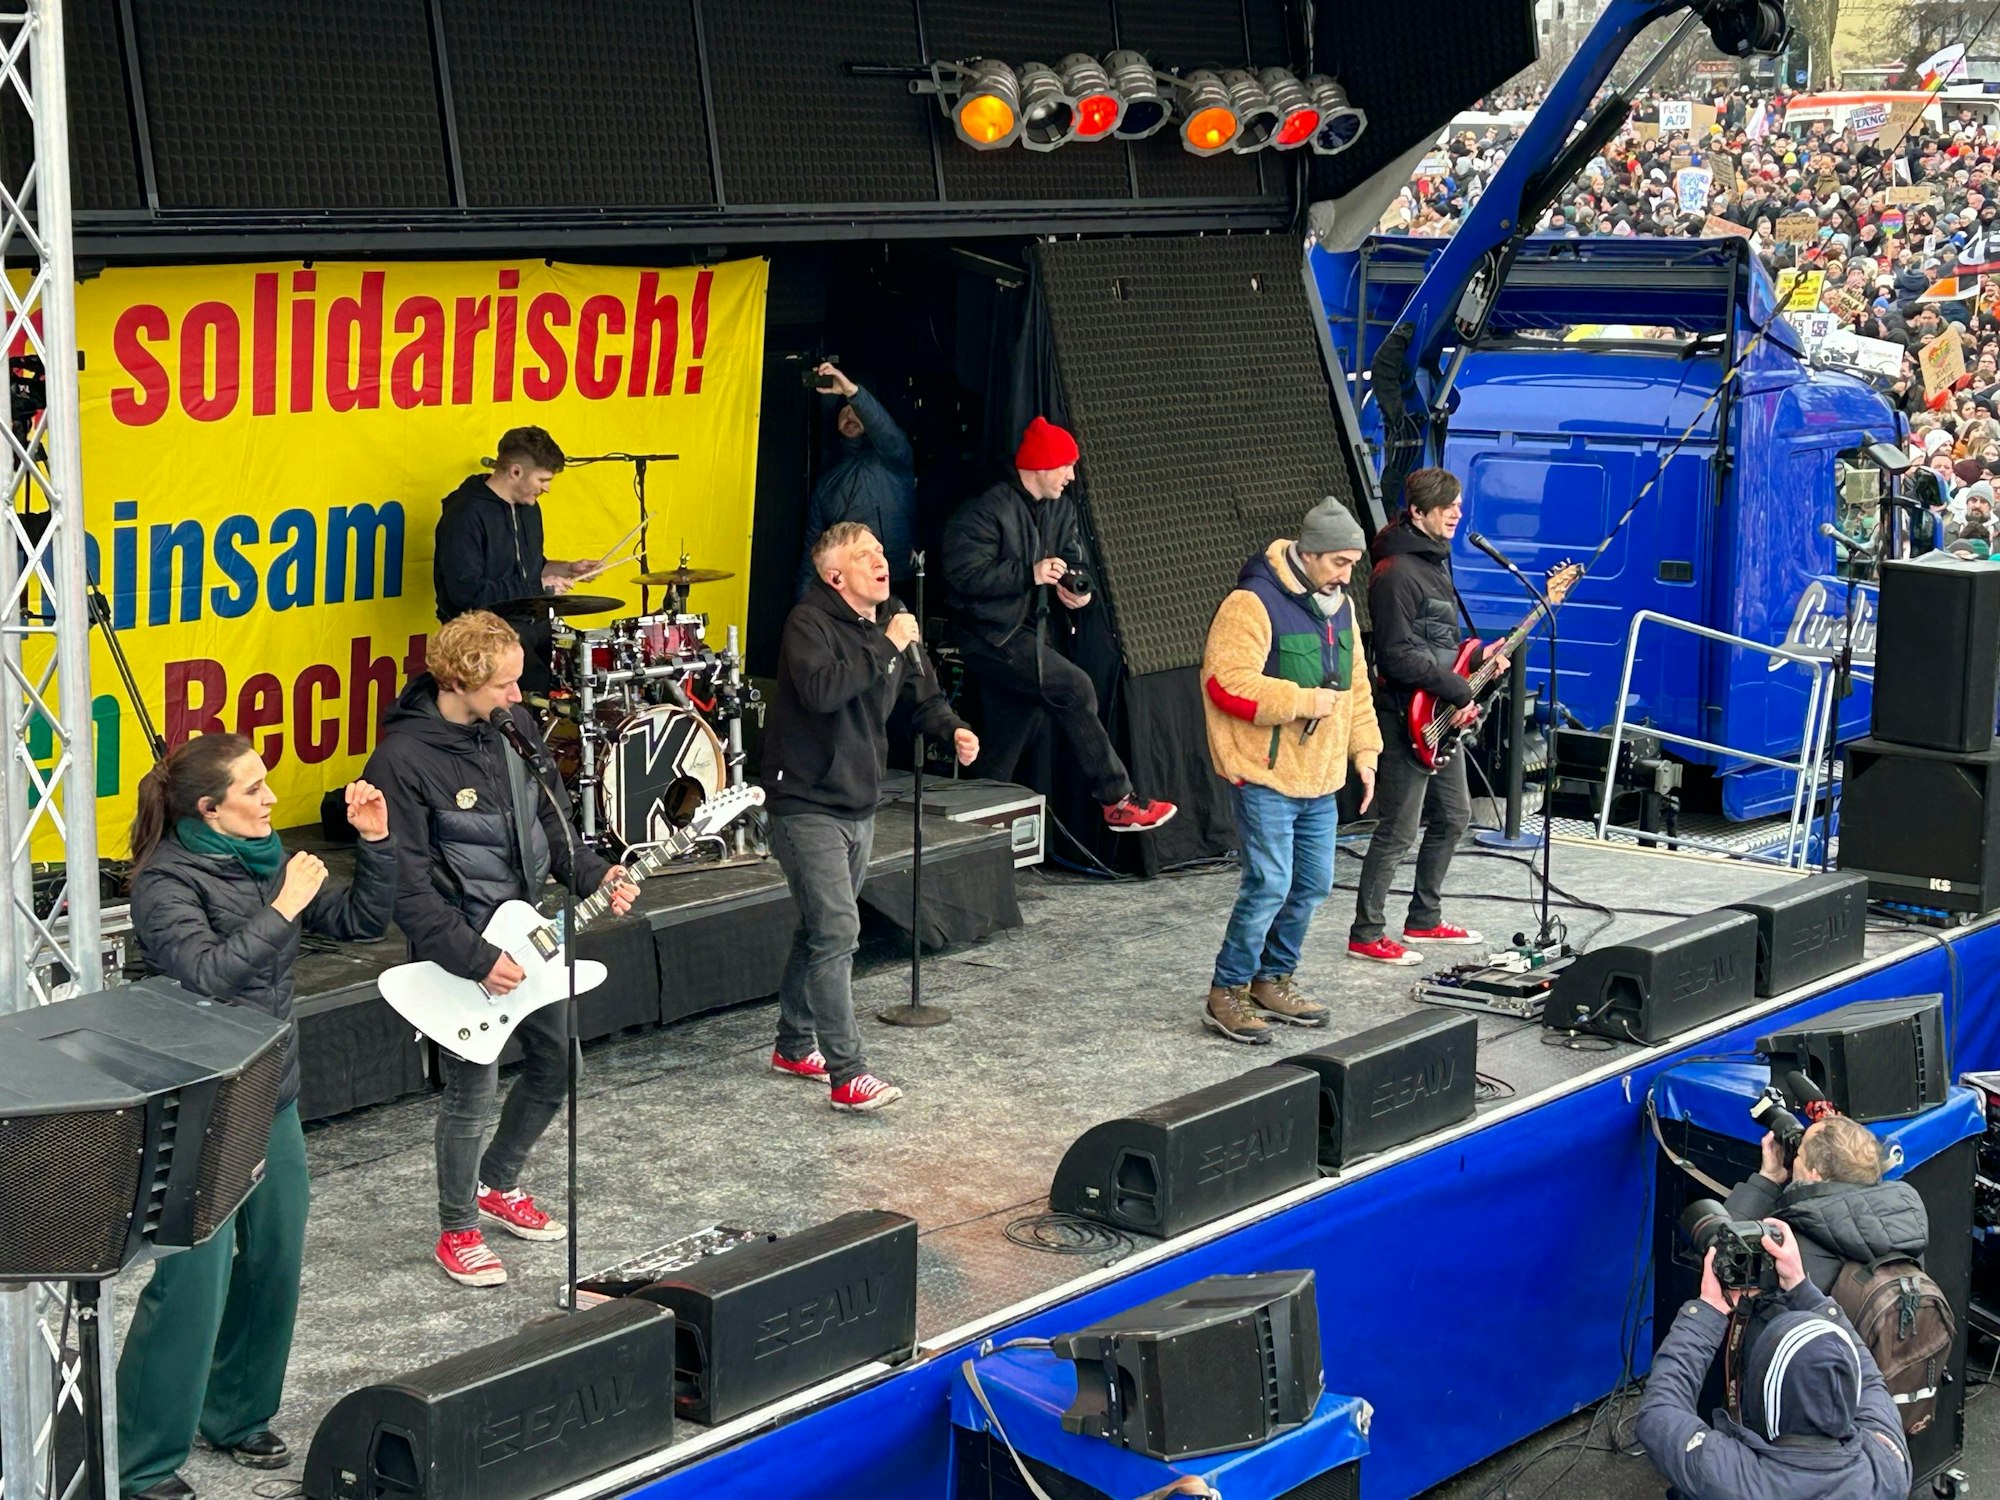 Kasalla und Eko Fresh auf der Bühne bei der Anti-AfD-Demo in Köln.